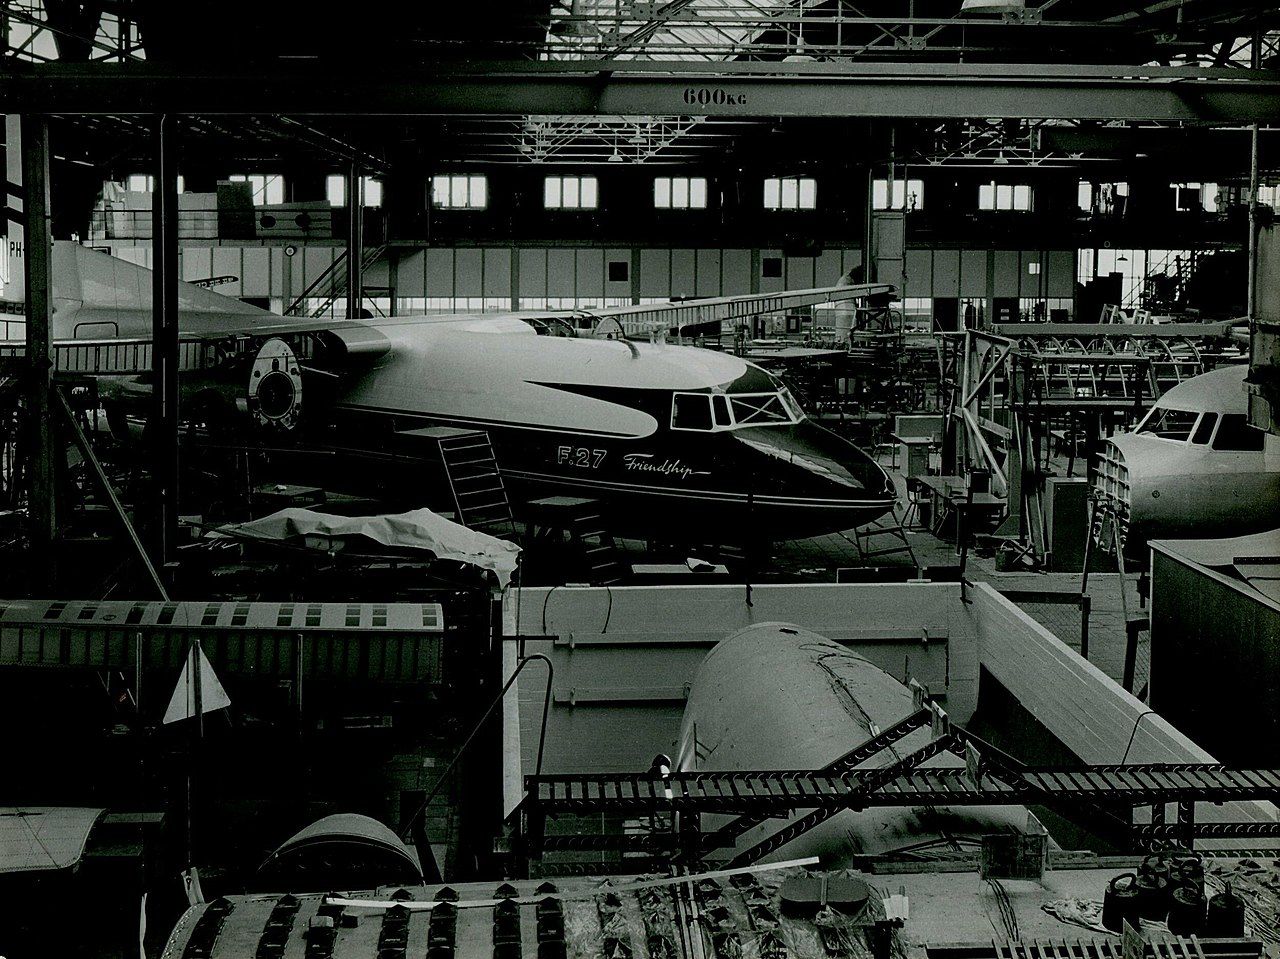 Multiple Fokker F27 In a Factory.